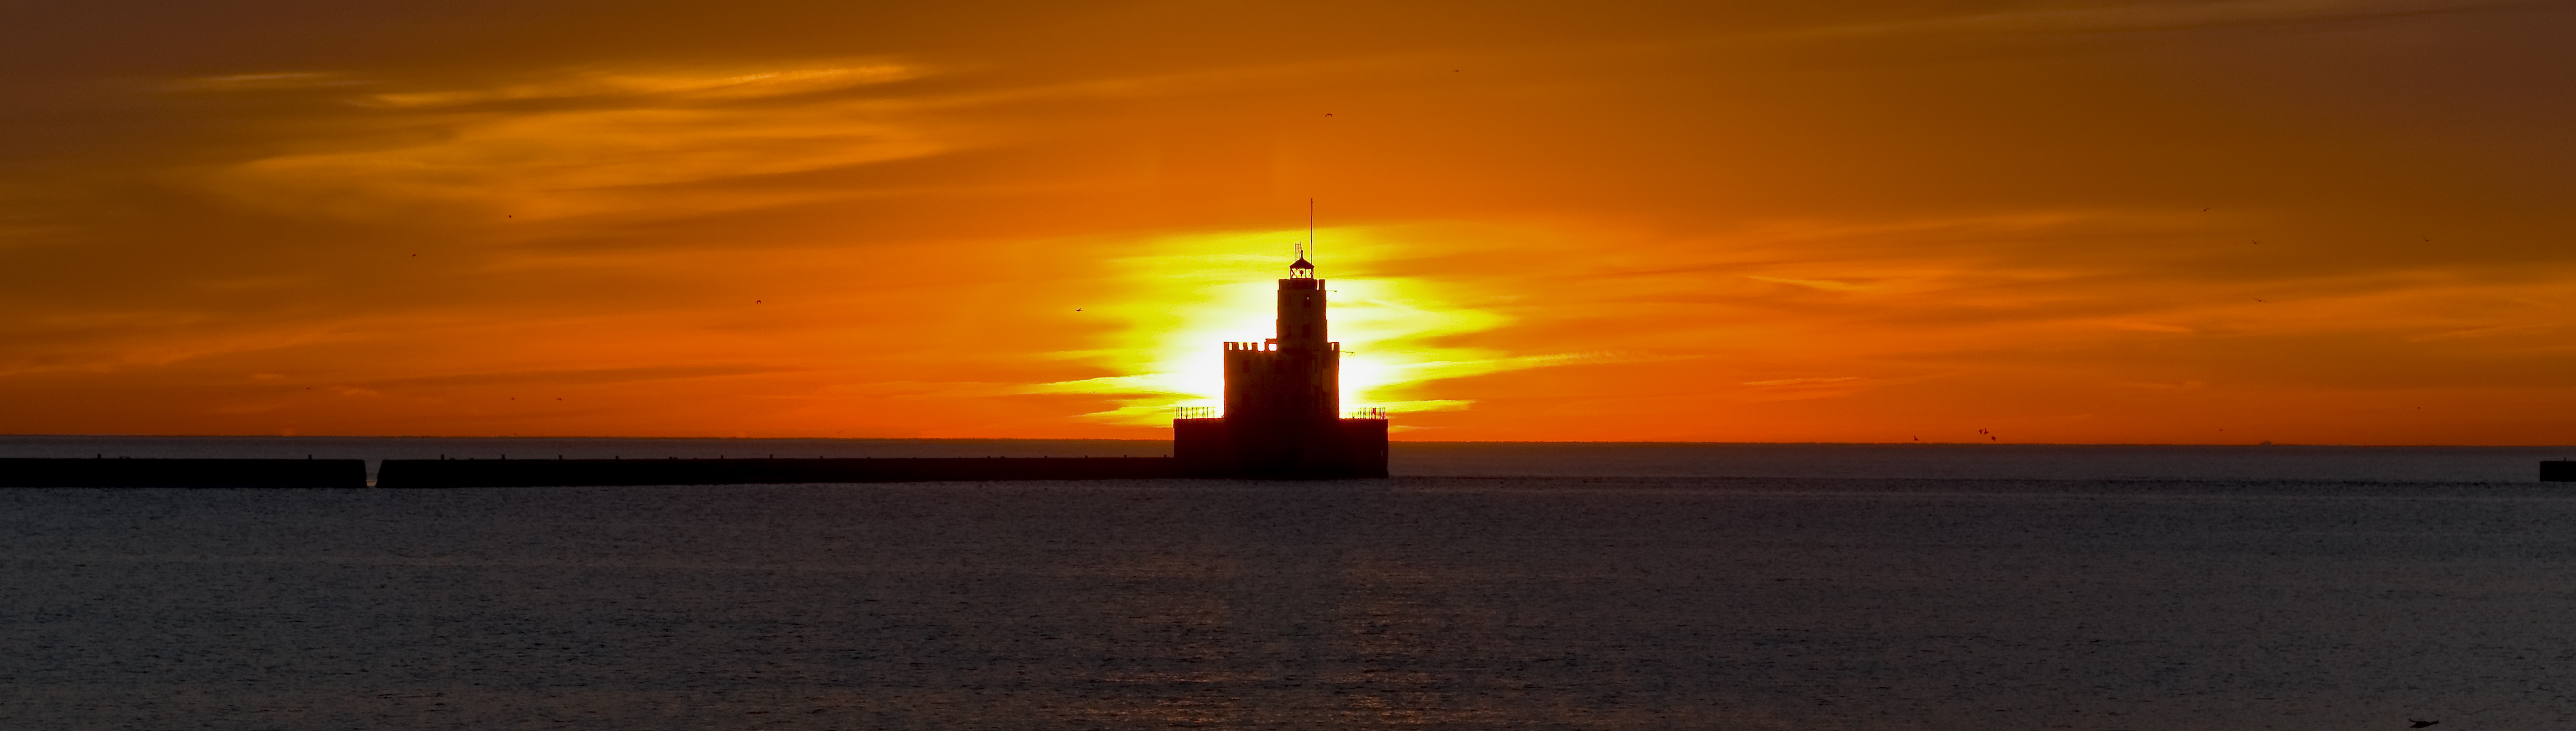 Sunrise_Lake Michigan